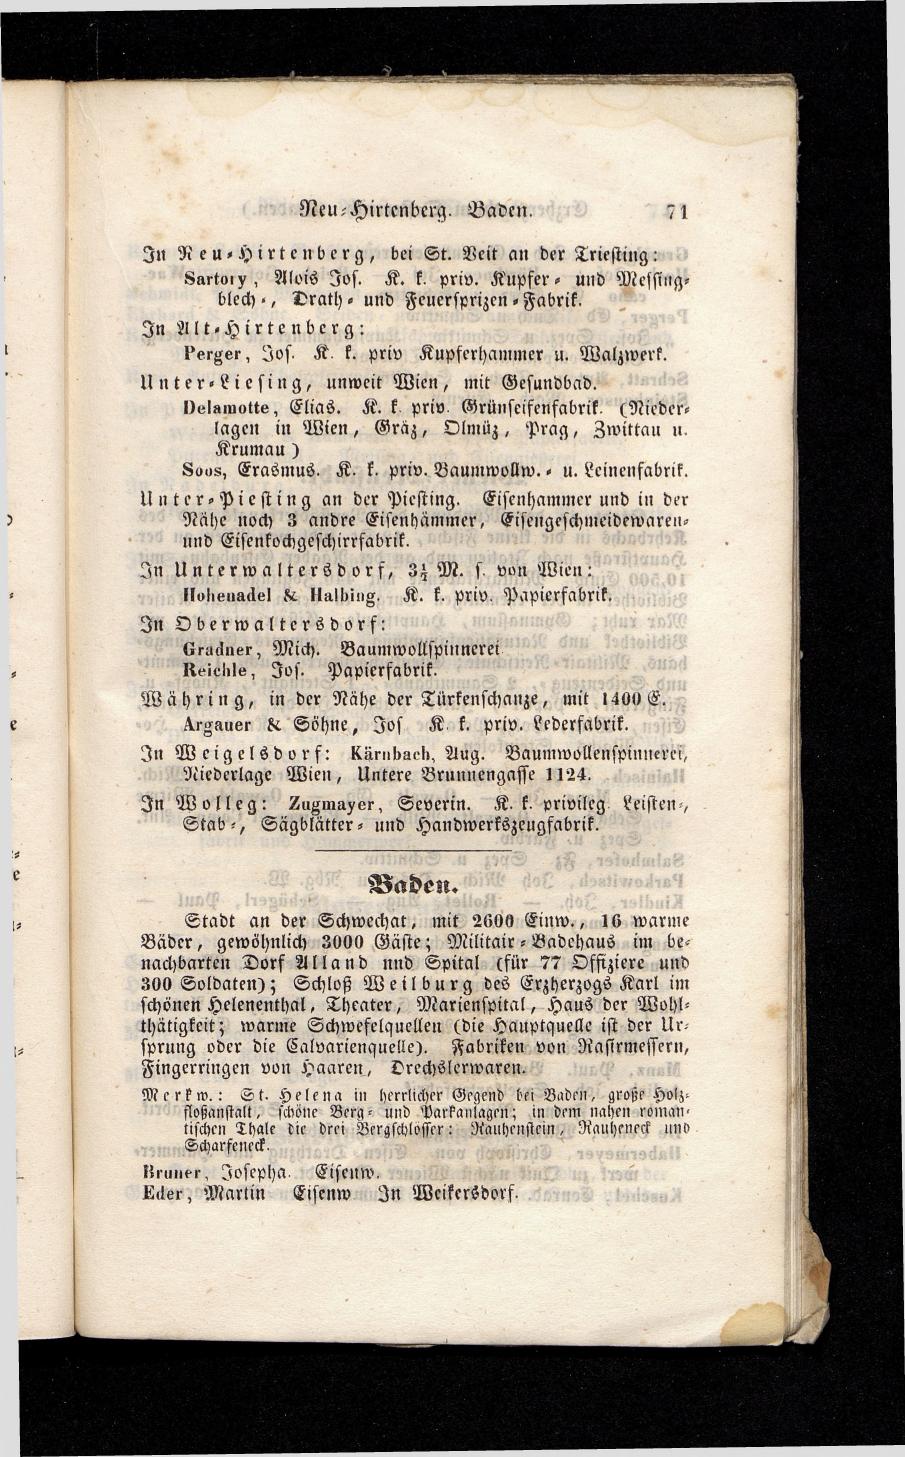 Grosses Adressbuch der Kaufleute. No. 13. Oesterreich ober u. unter der Enns 1844 - Seite 75